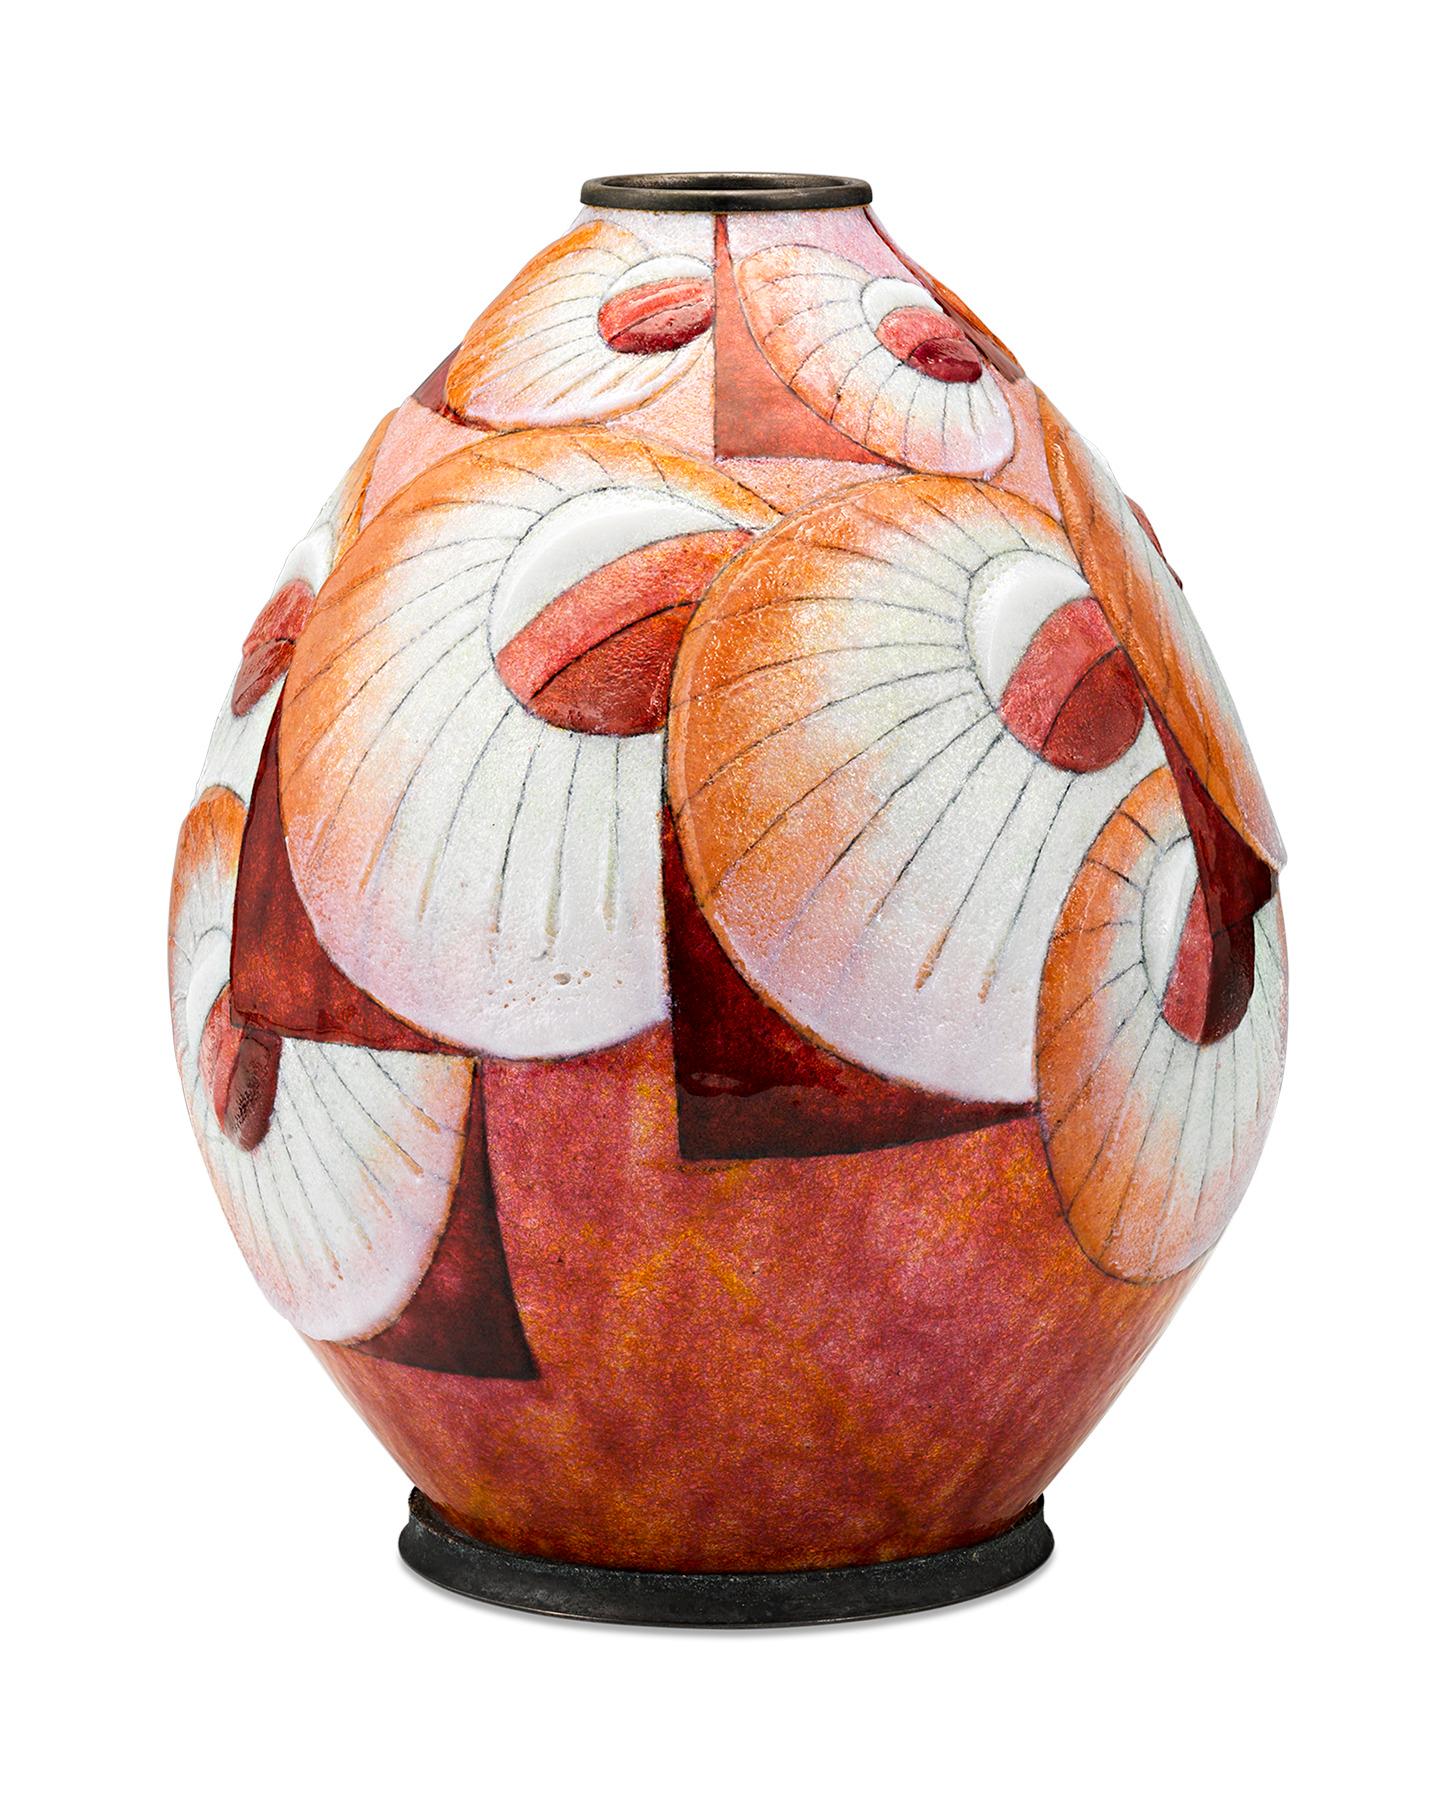 Décoré de lignes audacieuses et de motifs en rayons de soleil, ce vase Art déco de Camille Fauré est réalisé dans le style caractéristique de la firme à l'aide d'émail coloré sur une base en cuivre. Fauré a mis au point une technique consistant à